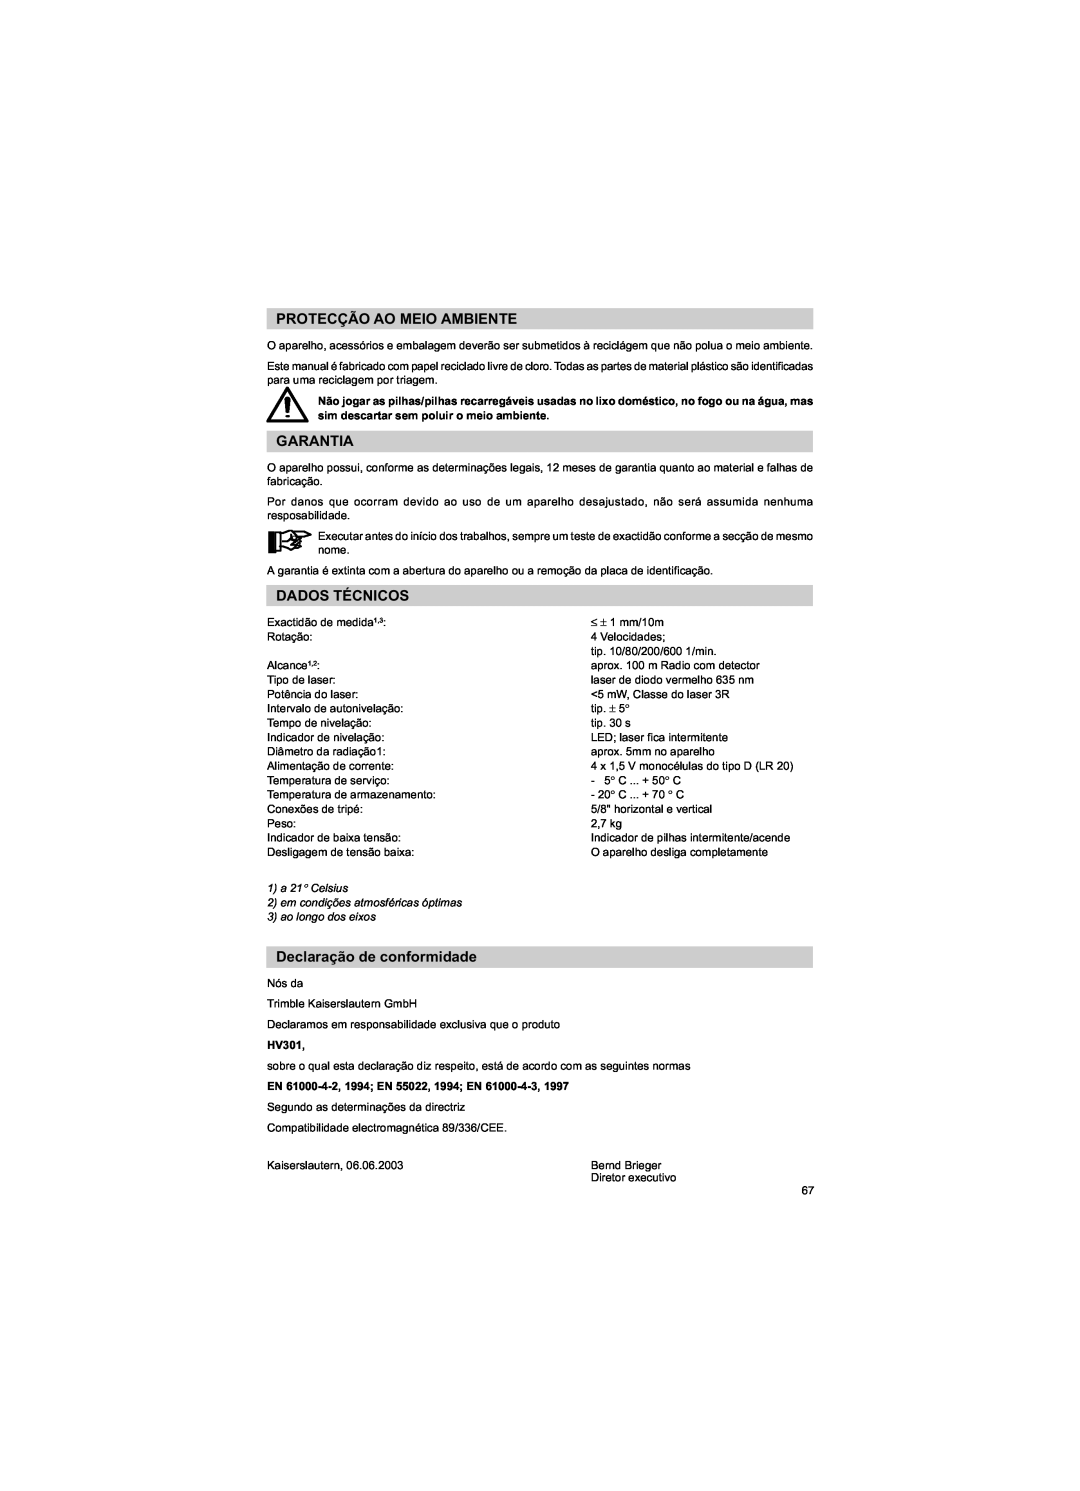 Trimble Outdoors HV301 manual Protecção Ao Meio Ambiente, Garantia, Dados Técnicos, Declaração de conformidade 